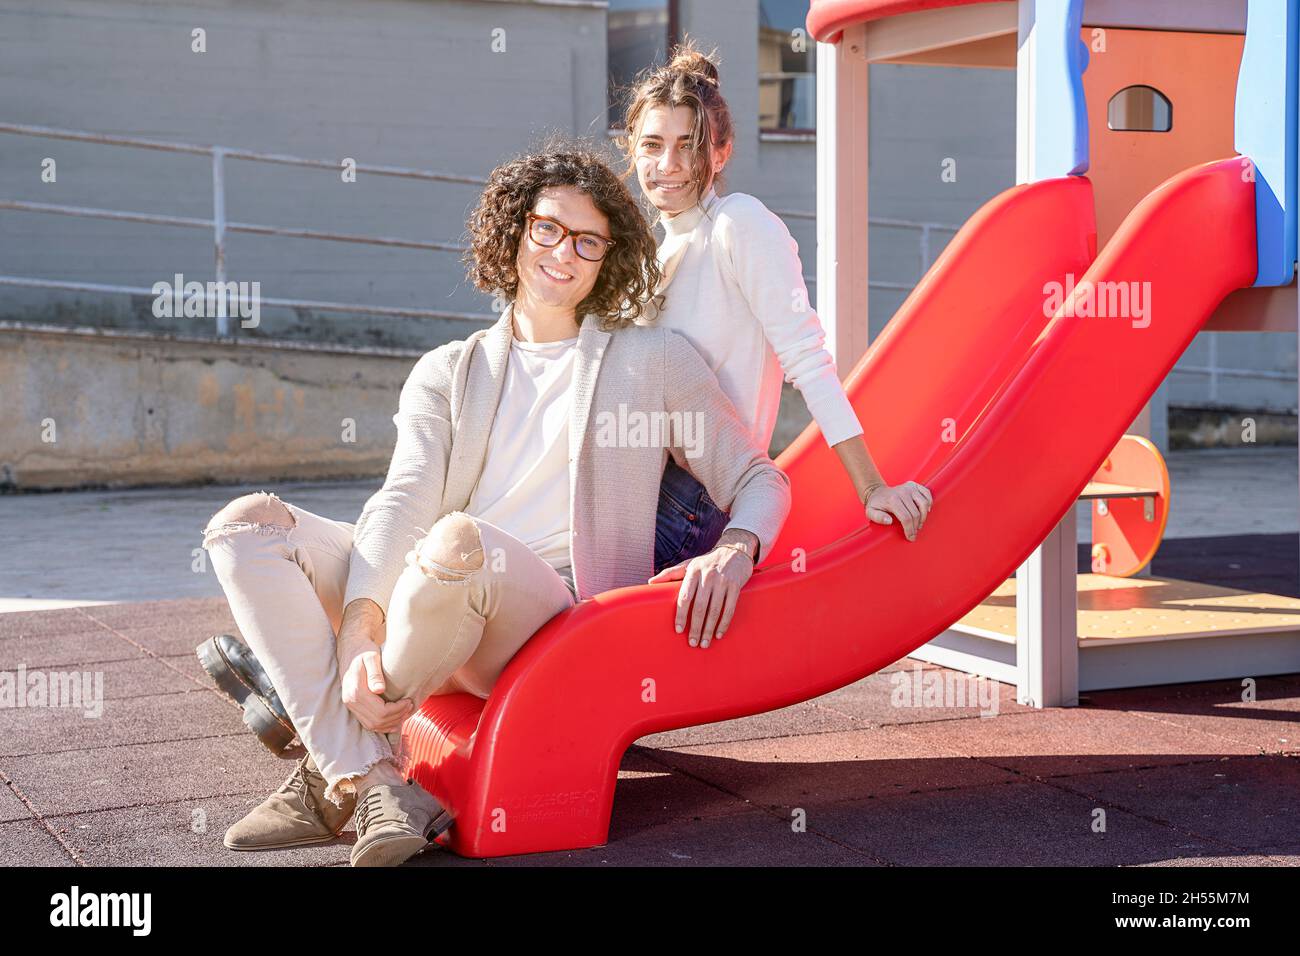 Schönes junges glückliches heterosexuelles Paar auf dem Spielplatz Stockfoto